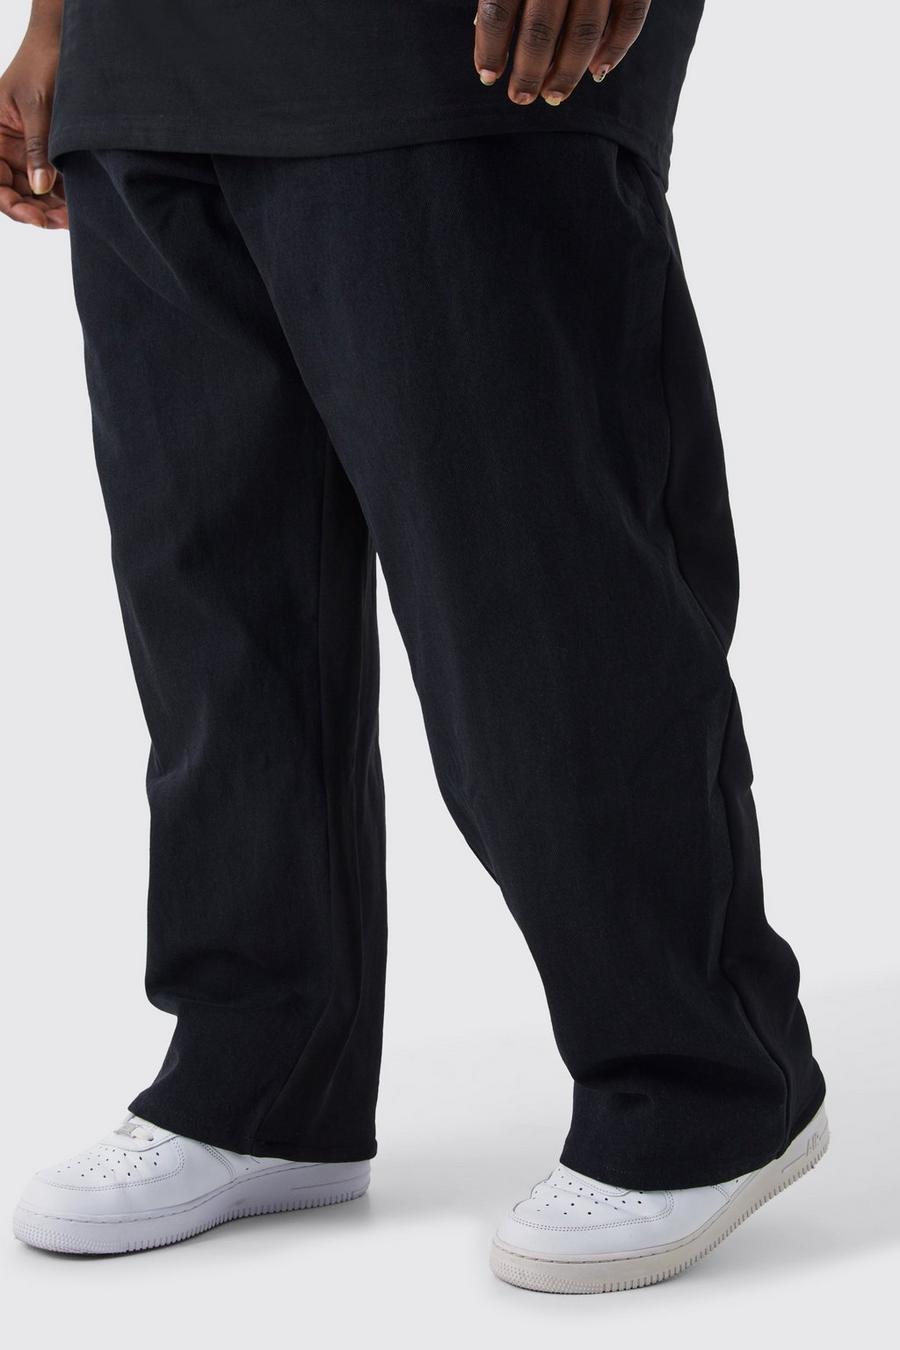 Pantaloni tuta ibridi Plus Size extra comodi con vita elasticizzata, Washed black